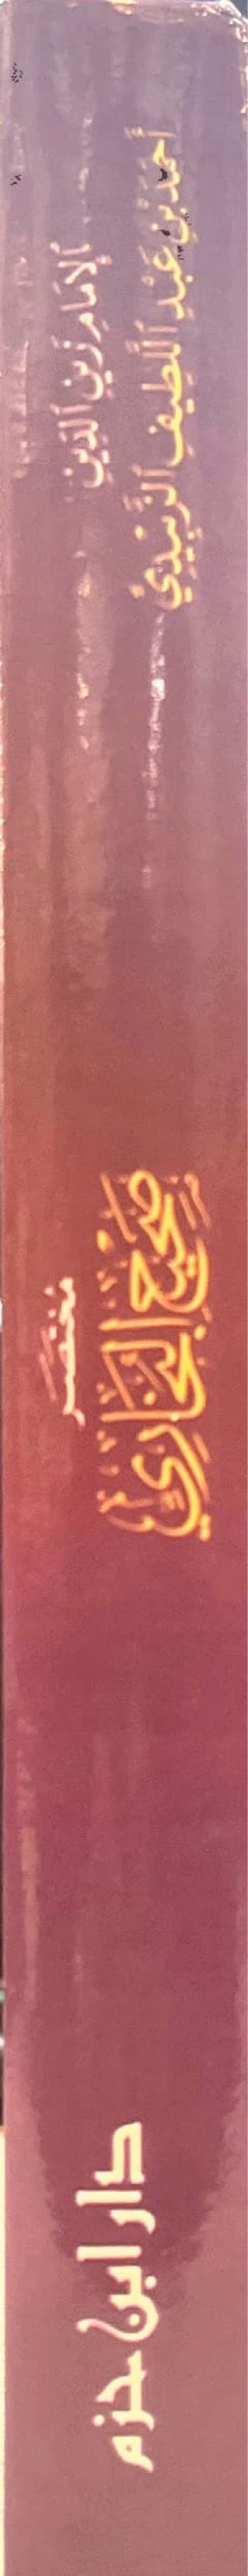 مختصر صحيح البخاري Mukhtasar Sahih Al Bukhari (Ibn Hazm)